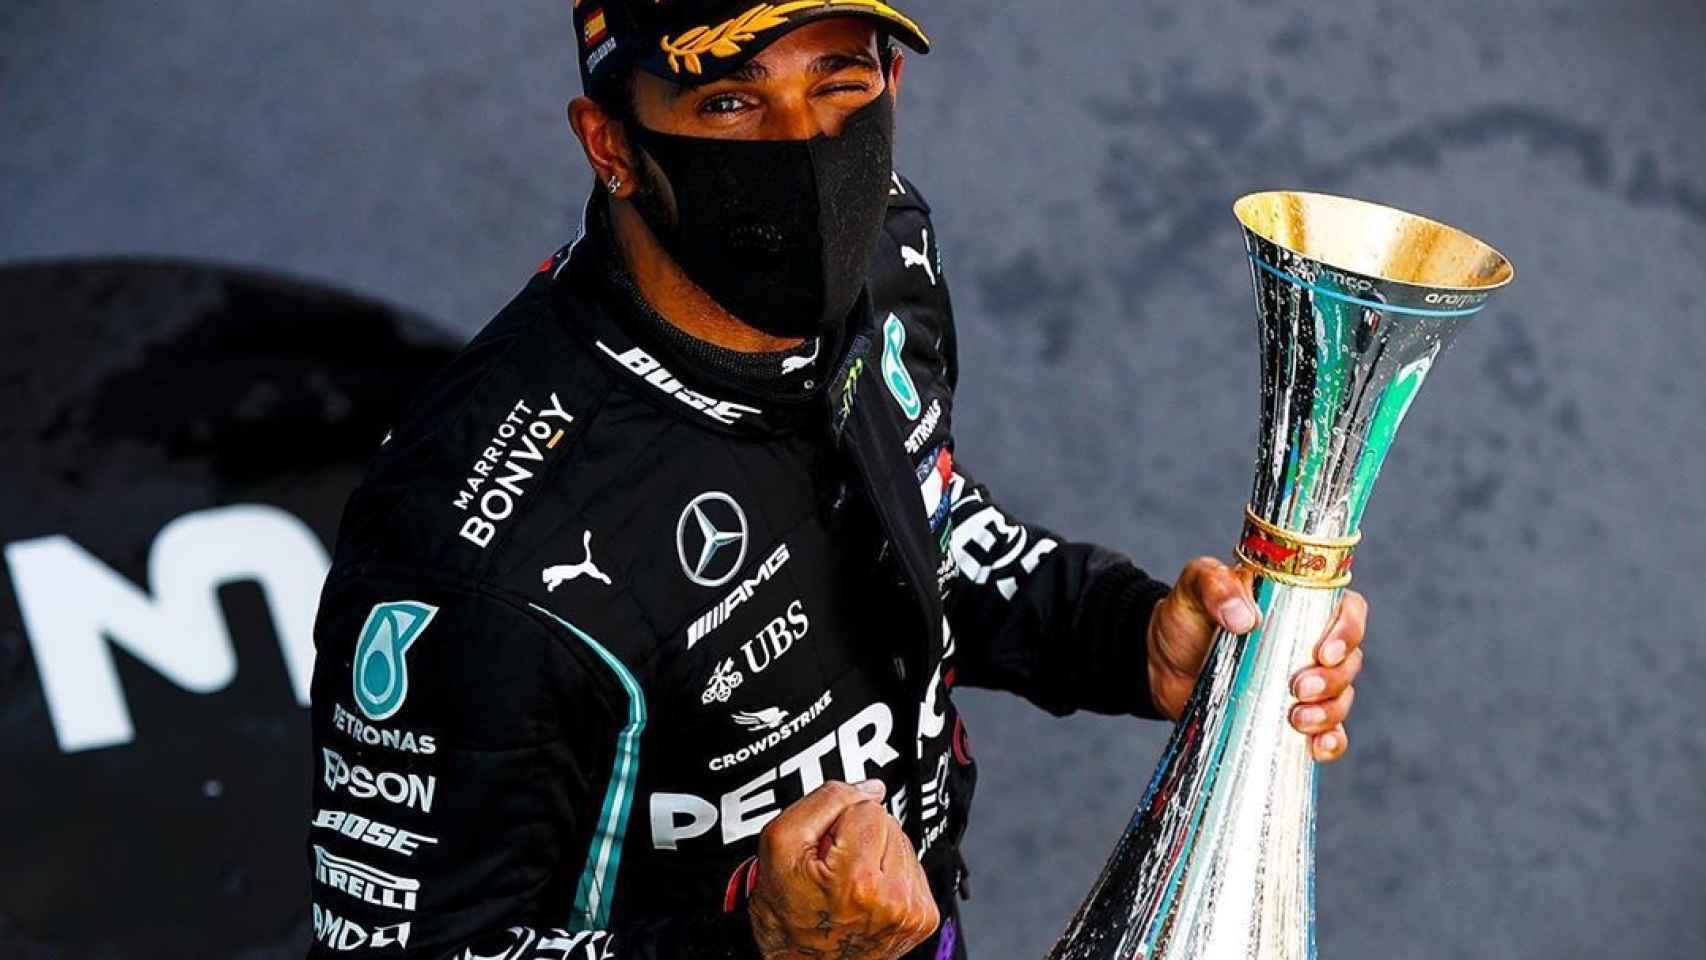 Hamilton celebra un triunfo con Mercedes